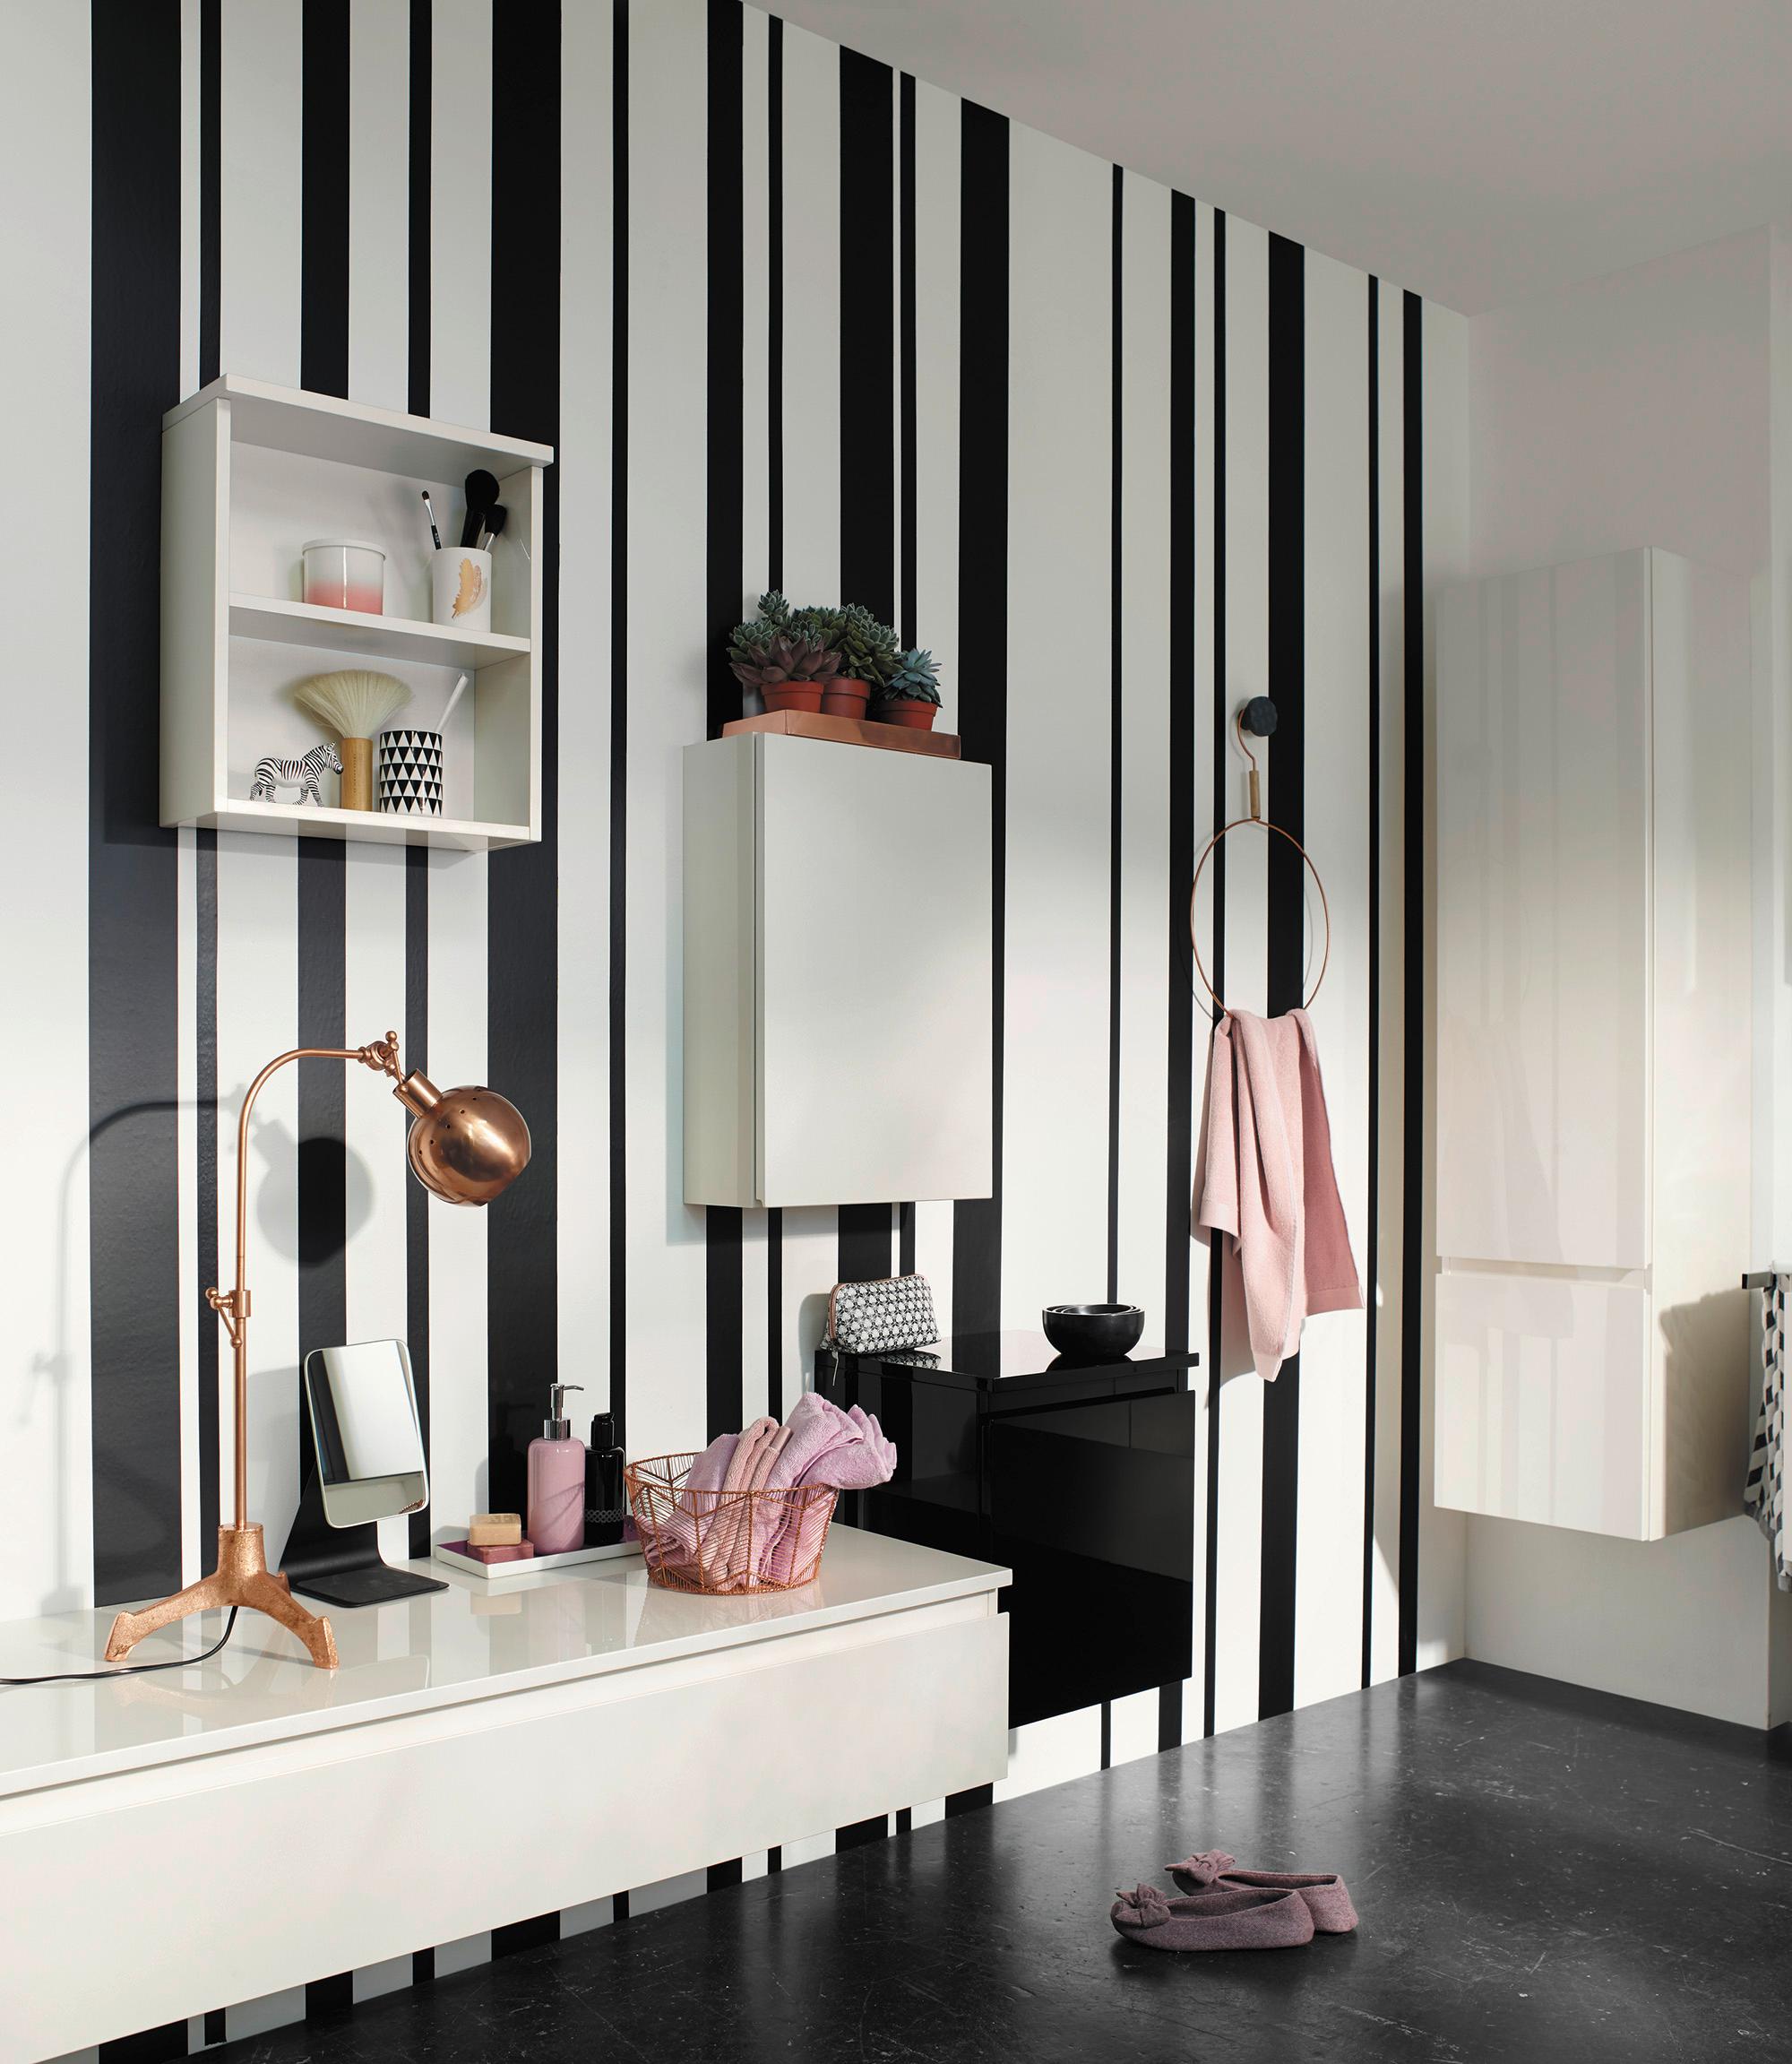 burgbad Bel Sideboard und Schränke in Schwarz-Weiß #bad #badezimmer #sideboard #modernesbadezimmer ©nexus product design